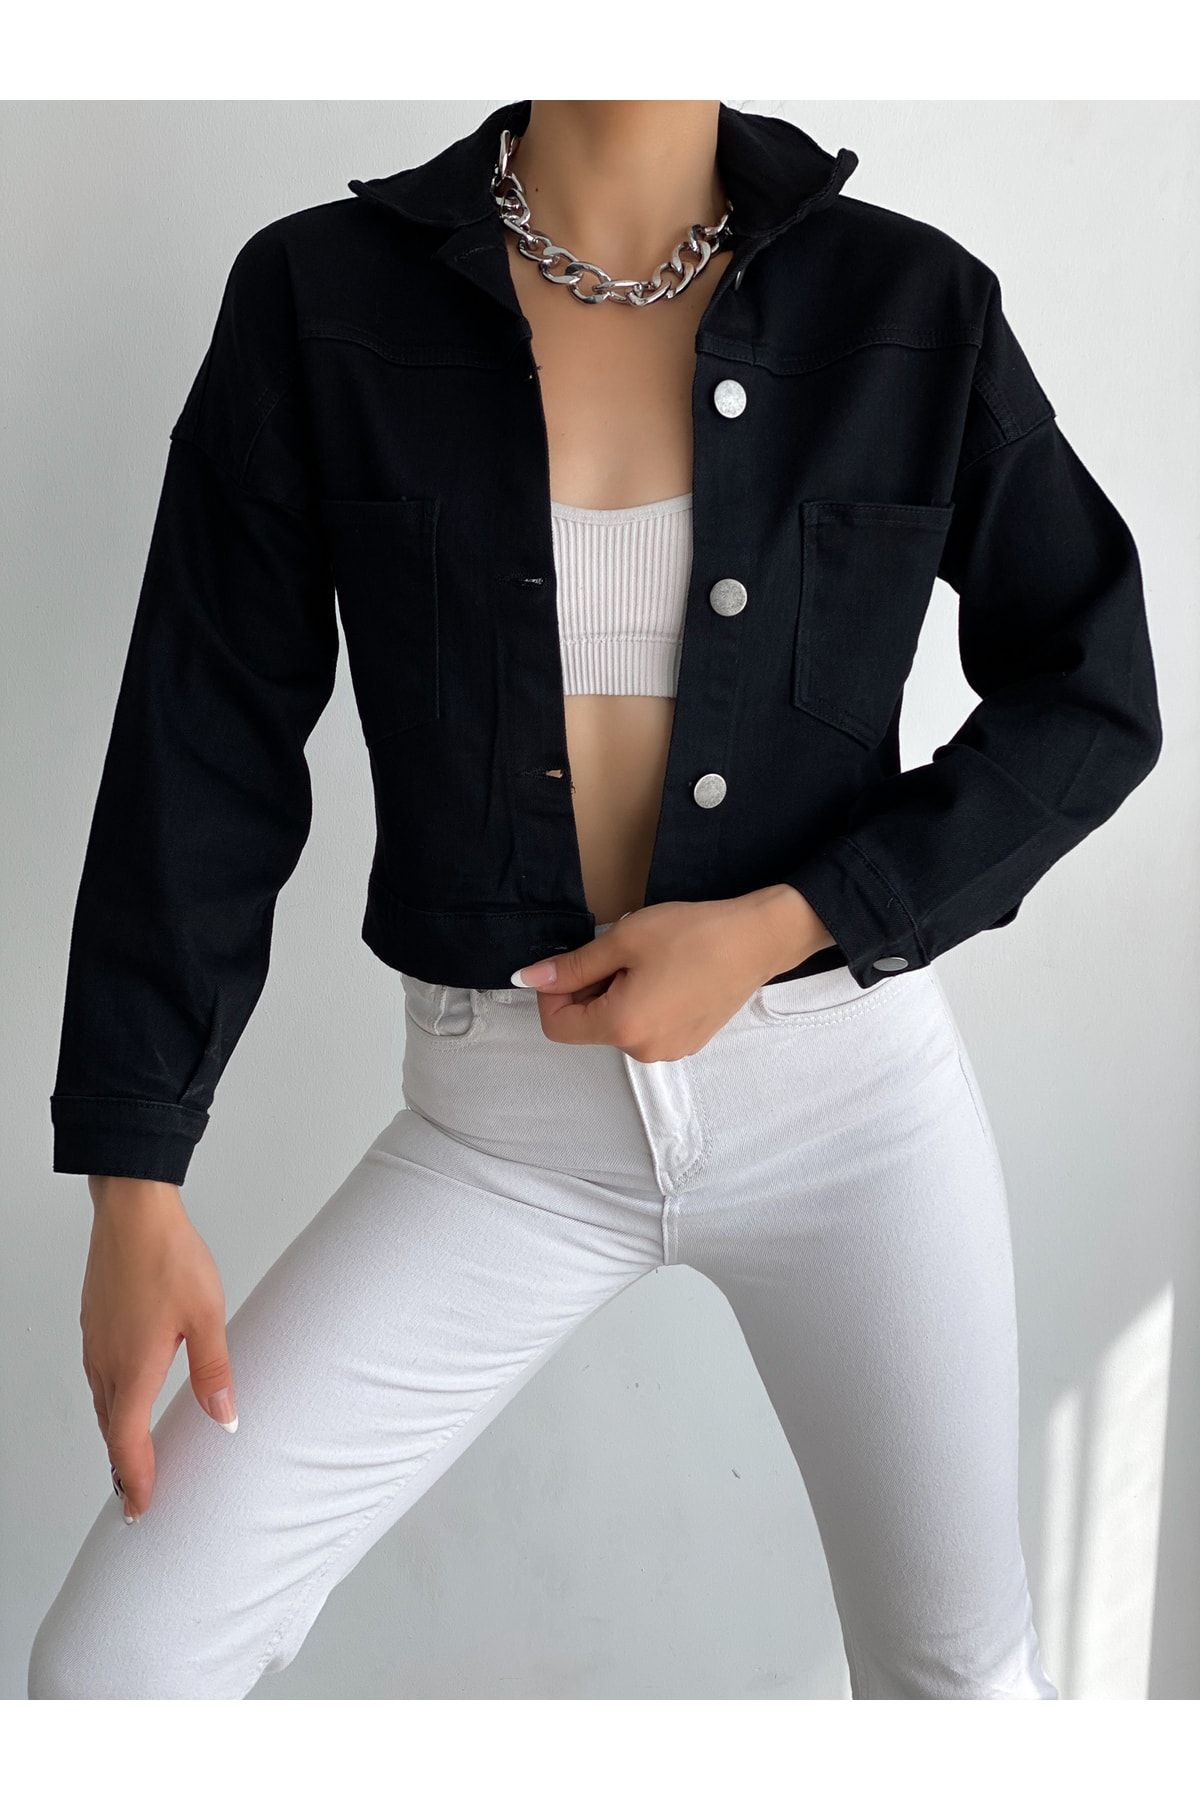 Fav Style Kadın Düğmeli Çift Cepli Crop Denim Ceket Siyah